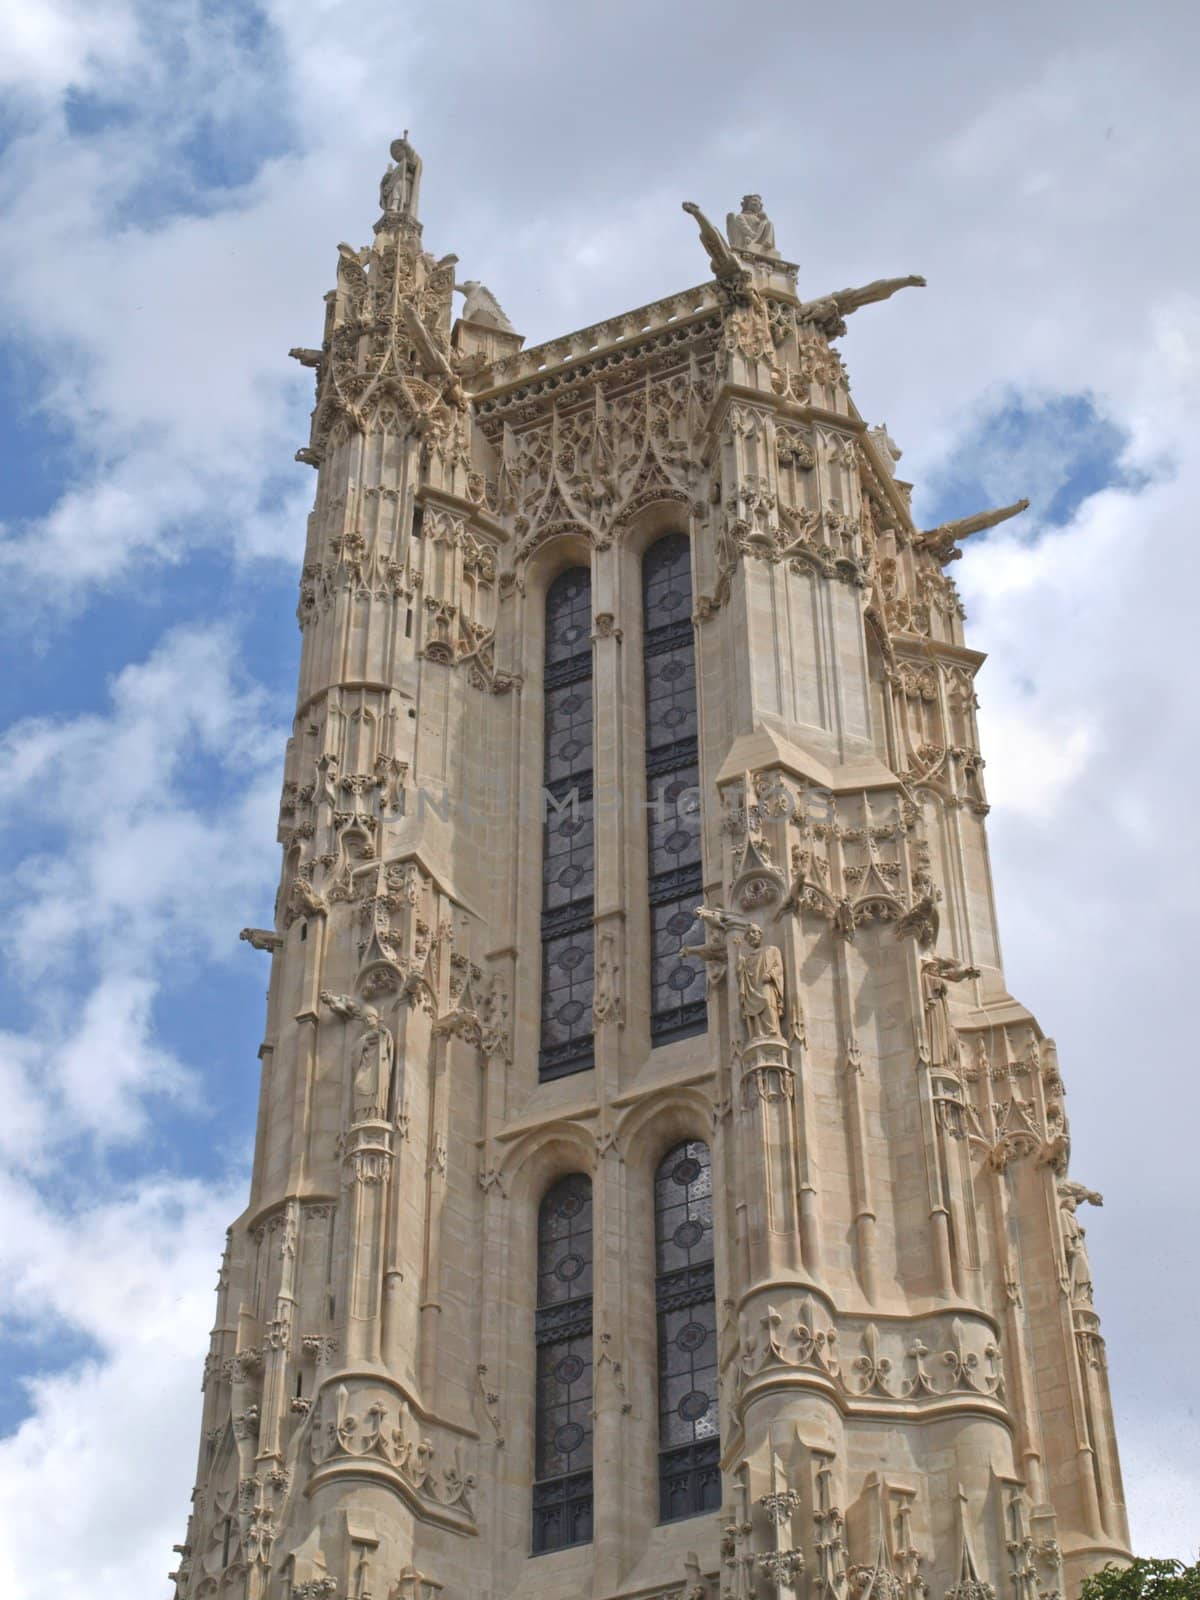 The tower of Saint-Jacques-la-Boucherie in Paris